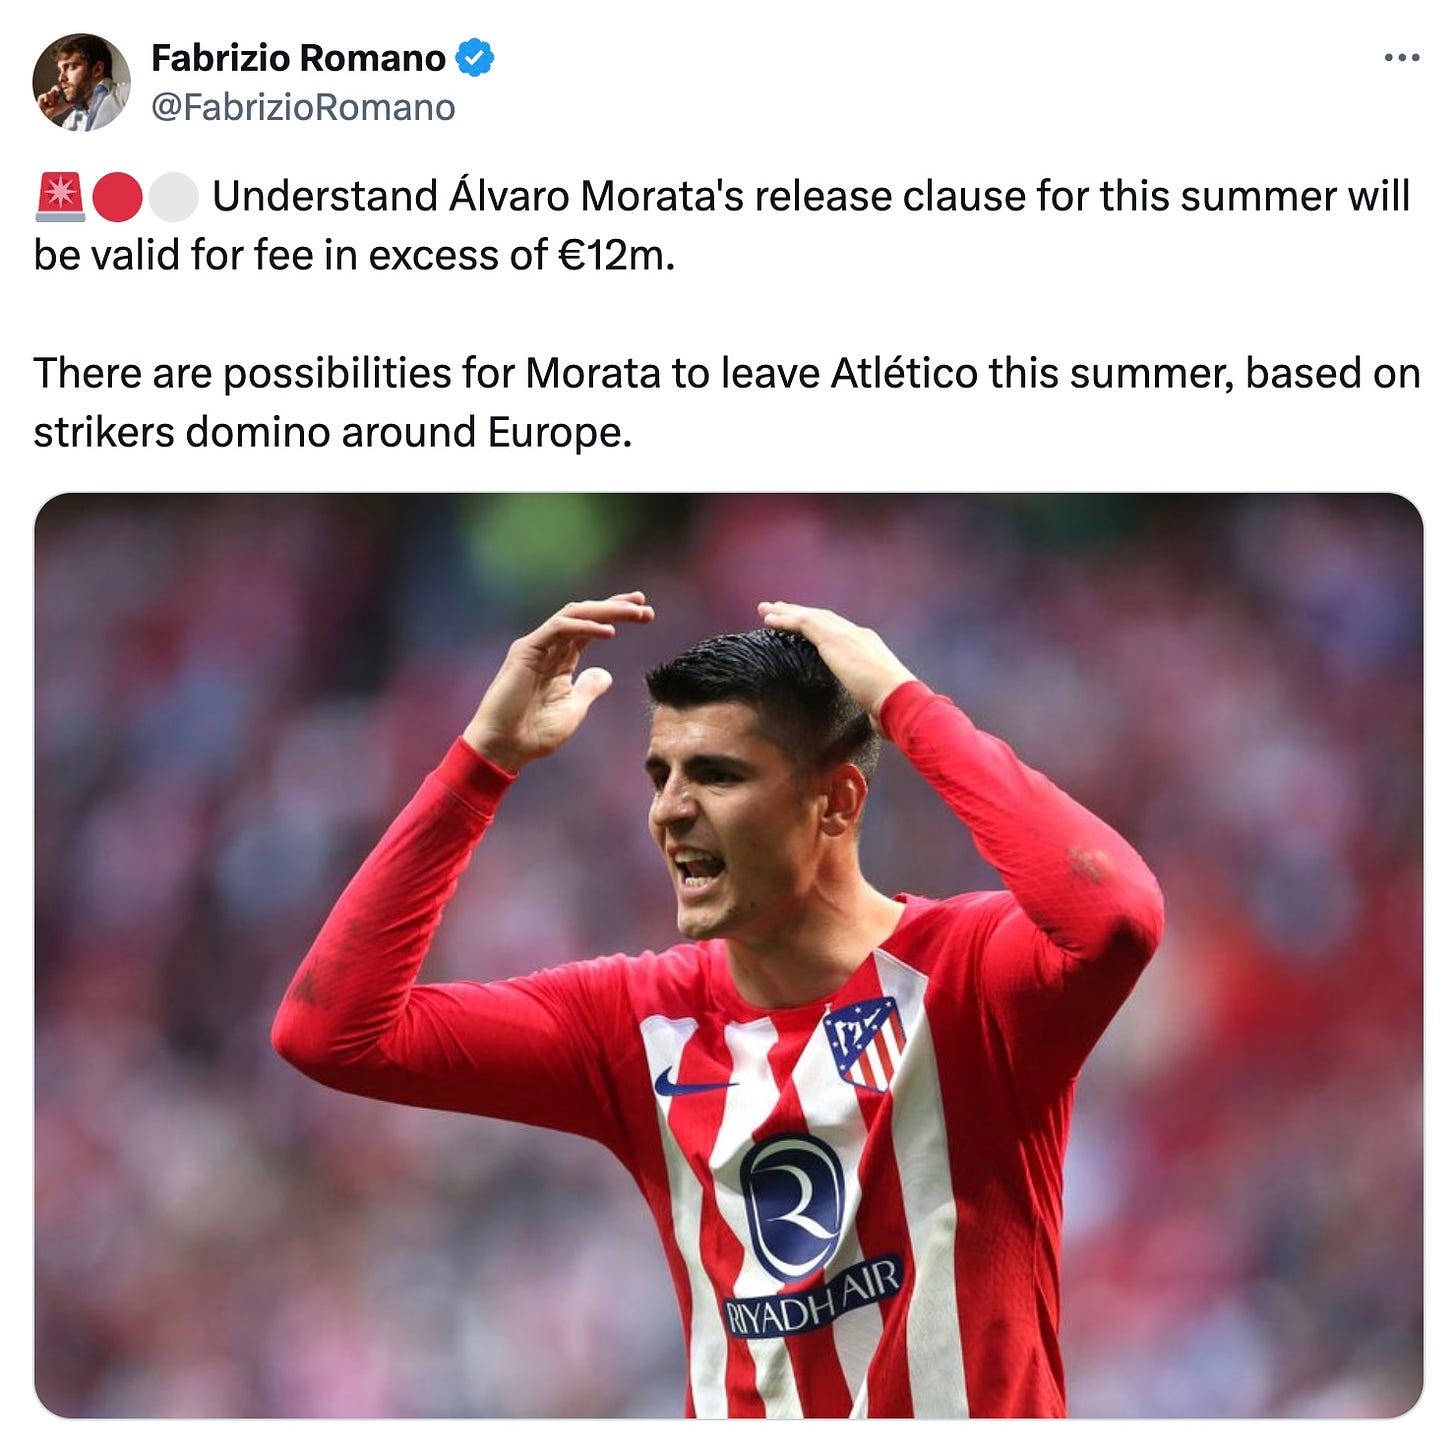 A tweet by Fabrizio Romano about Alvaro Morata